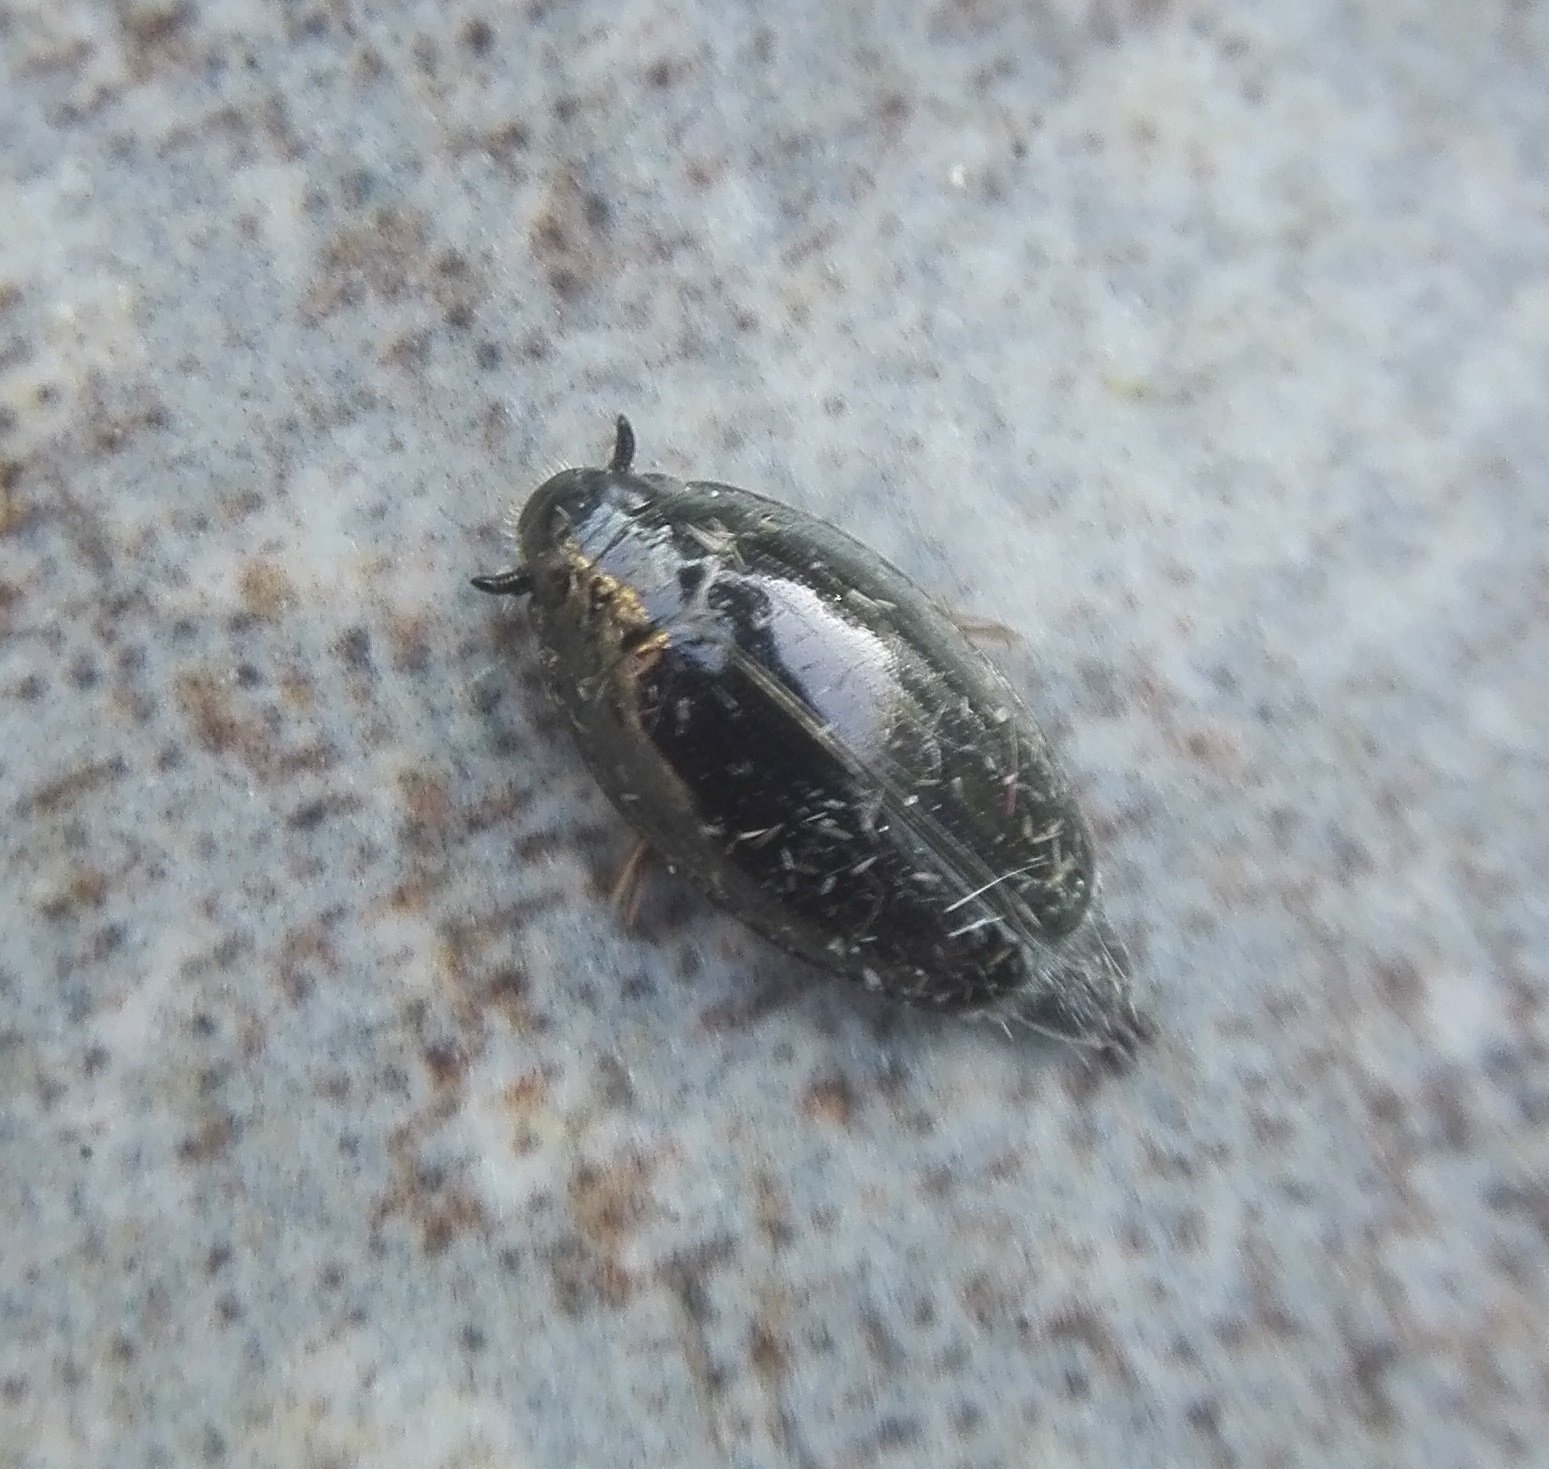 #869 Whirligig Beetle (Gyrinus substriatus)